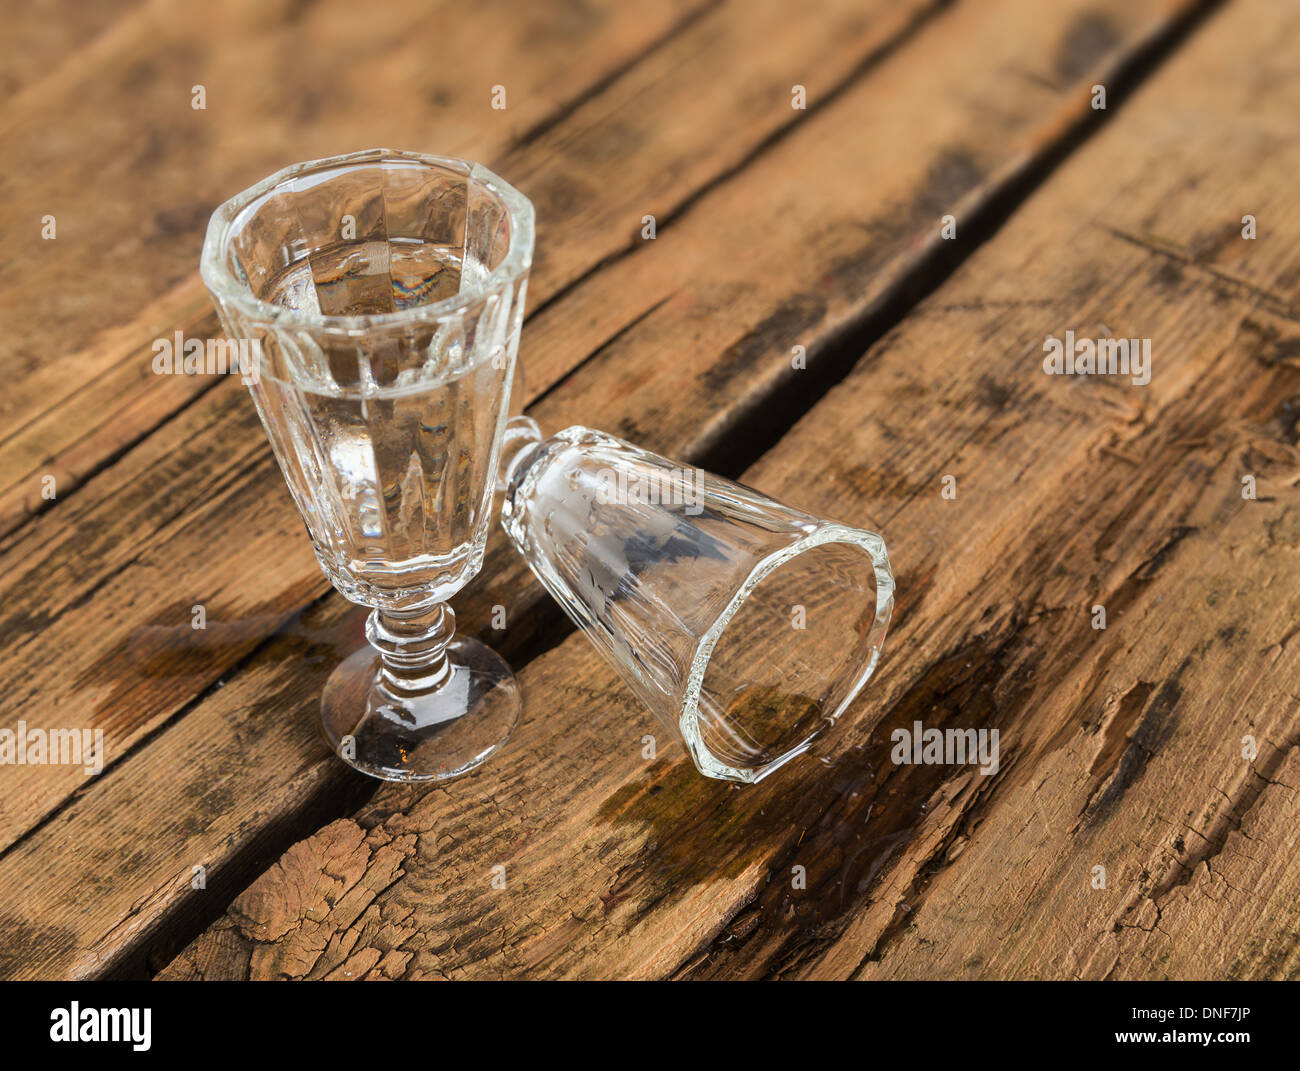 La vodka e ciggarettes - uno stile di vita poco salutare Foto Stock